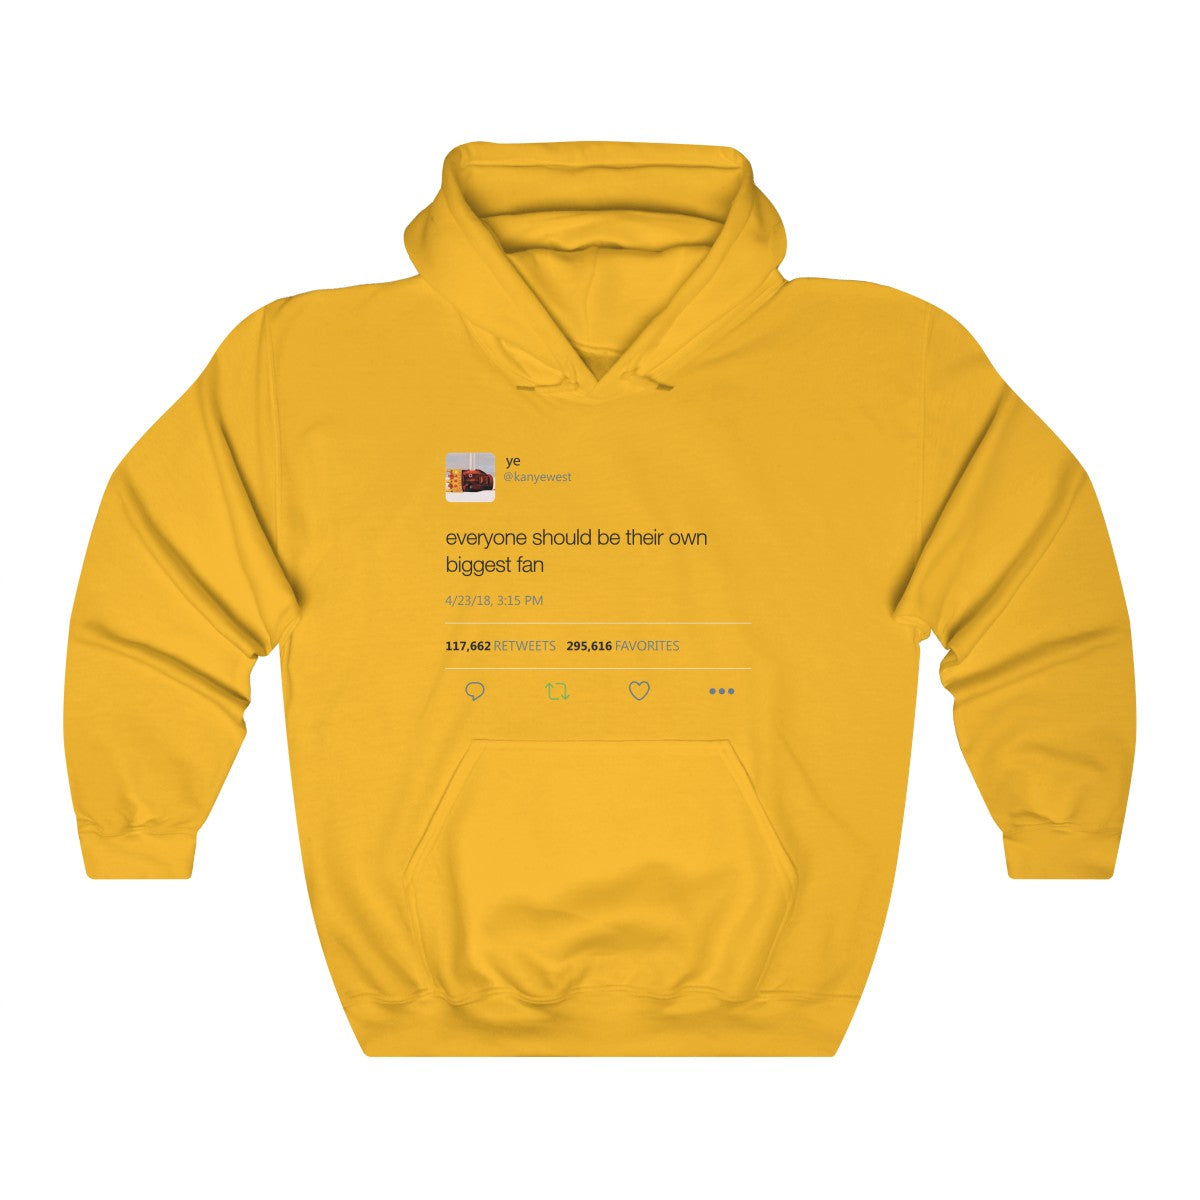 Everyone should be their own biggest fan - Kanye West Tweet Inspired Unisex Hooded Sweatshirt Hoodie-Gold-S-Archethype